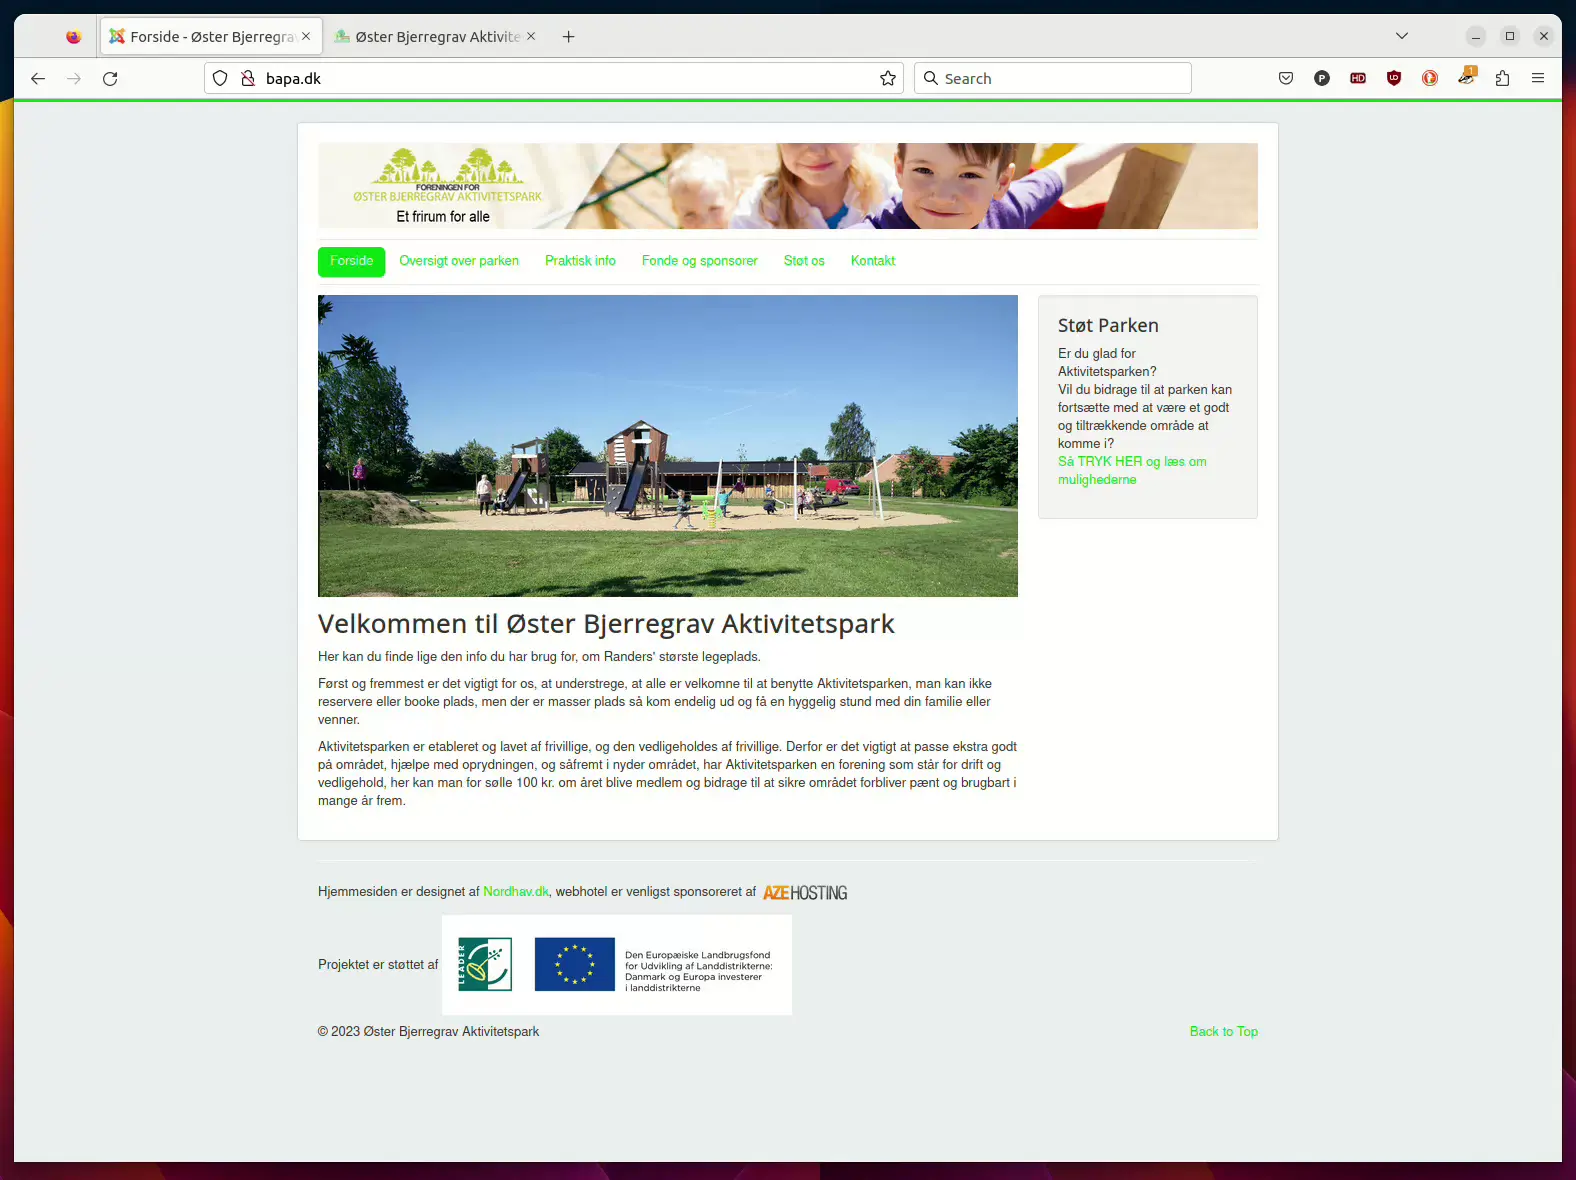 Den gamle hjemmeside for Øster Bjerregravs Aktivtetspark